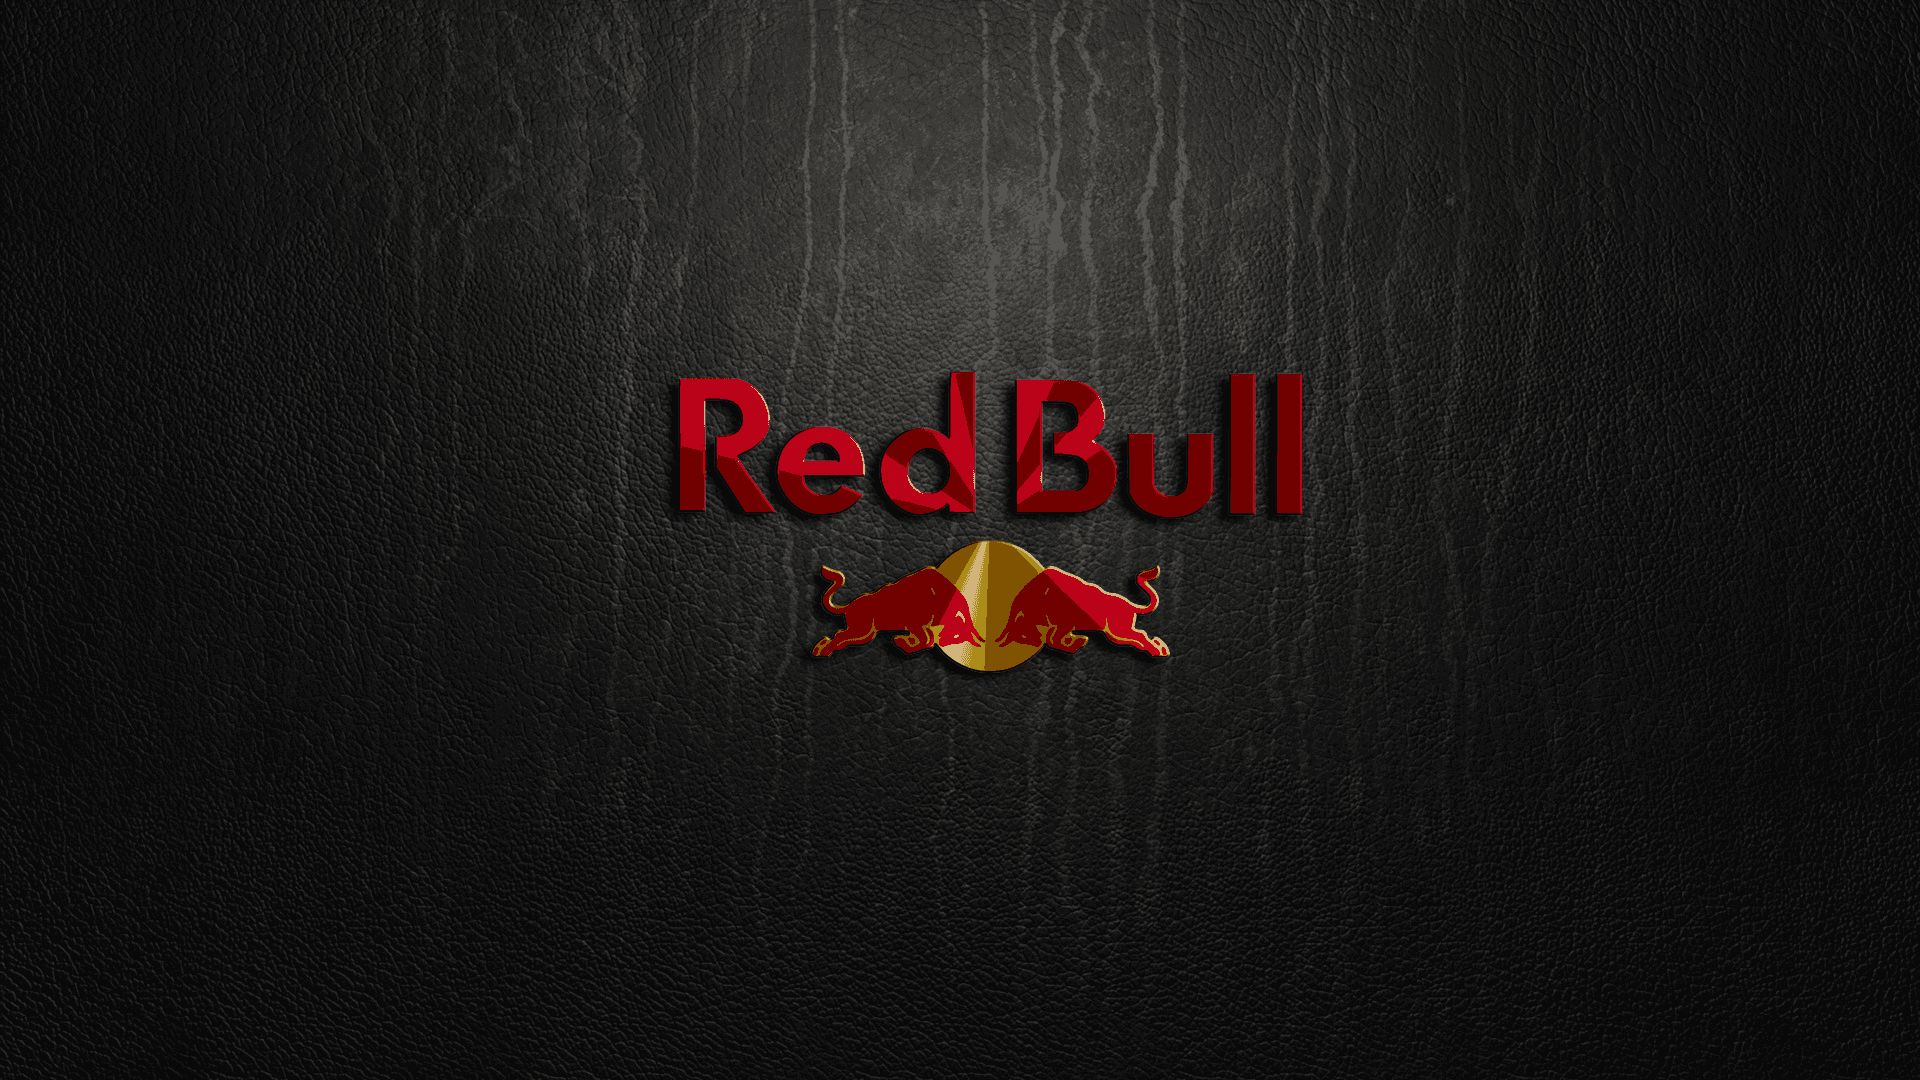 Alimentai Tuoi Sogni Con Red Bull